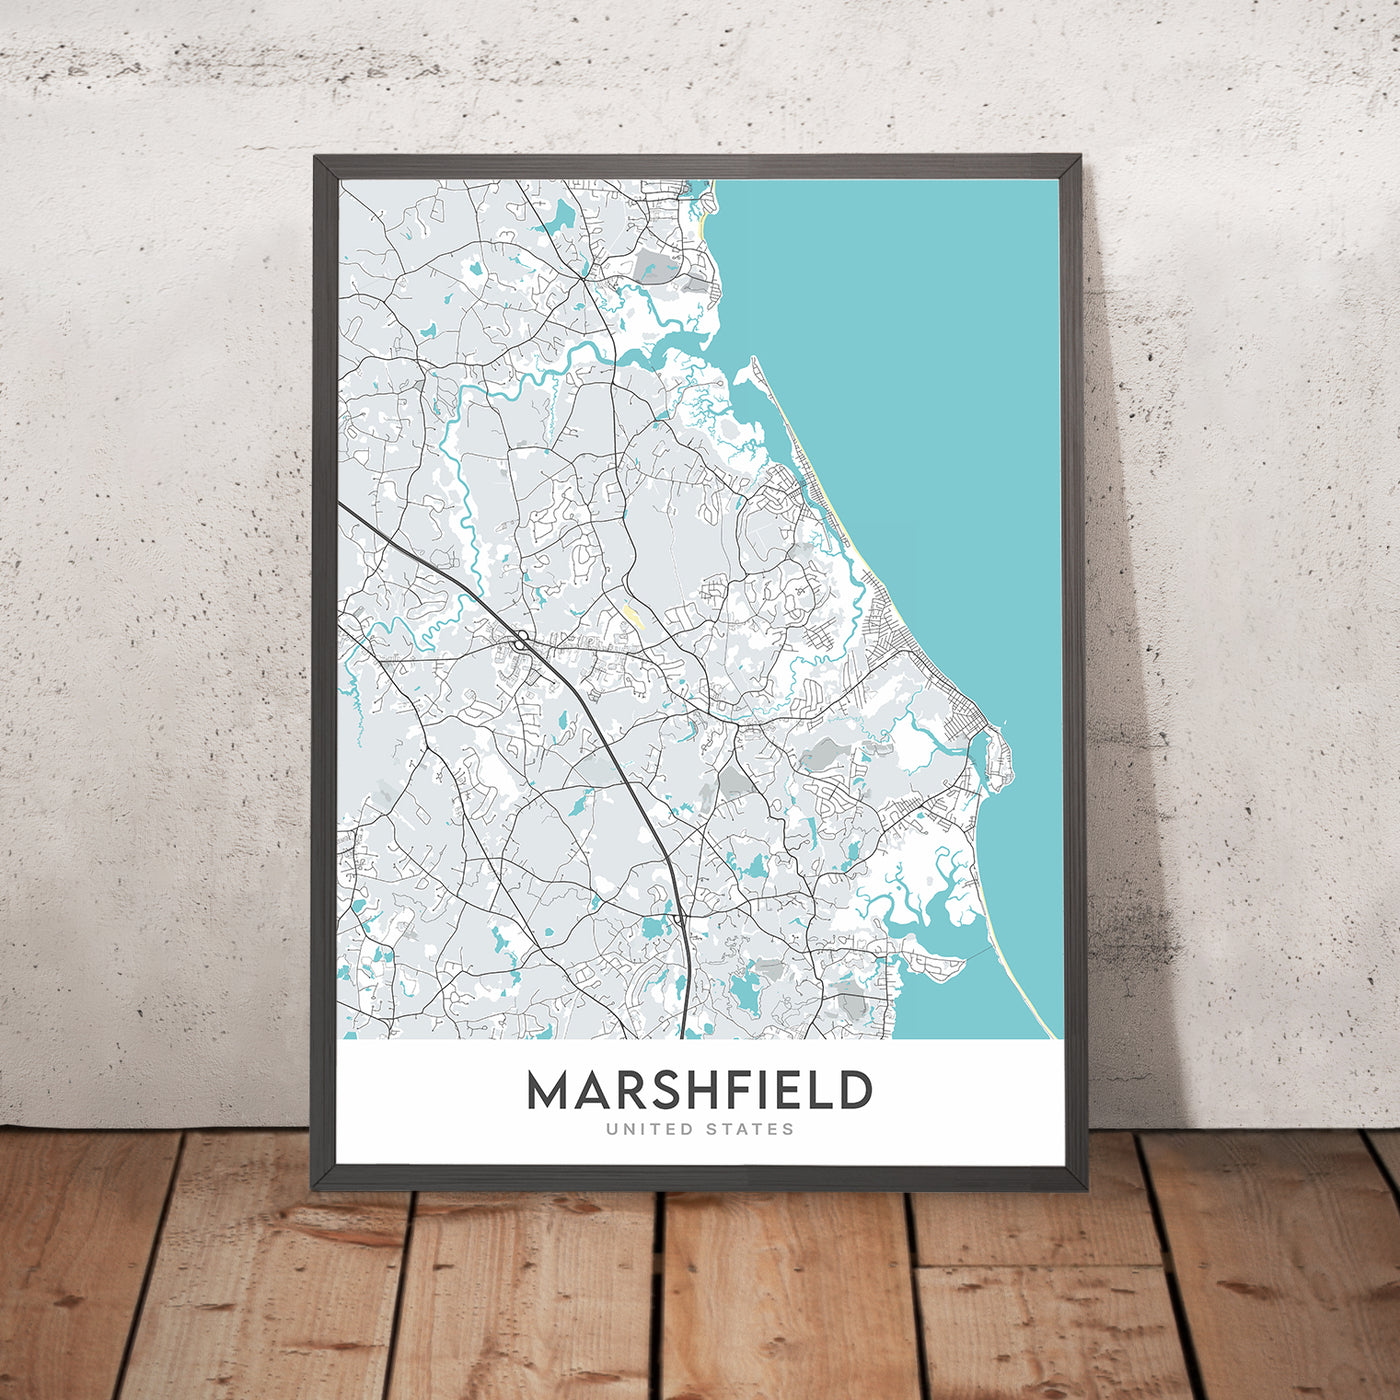 Plan de la ville moderne de Marshfield, MA : plage de Brant Rock, domaine Daniel Webster, plage de Green Harbour, plage de Rexhame, South River